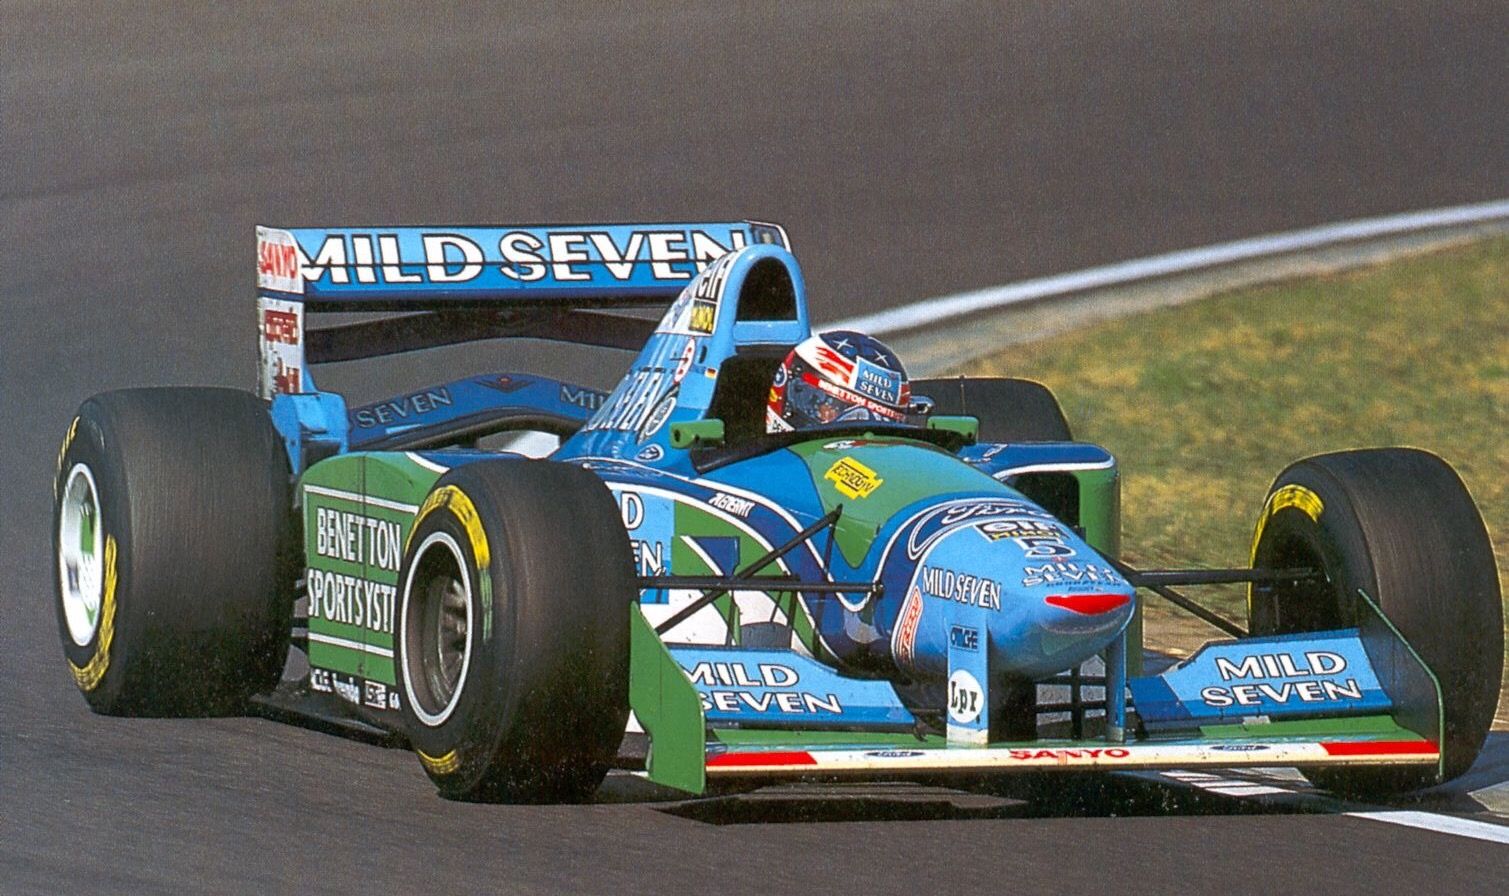 Uganda muñeca Estados Unidos The Benetton B194: Schumacher's First Championship Car